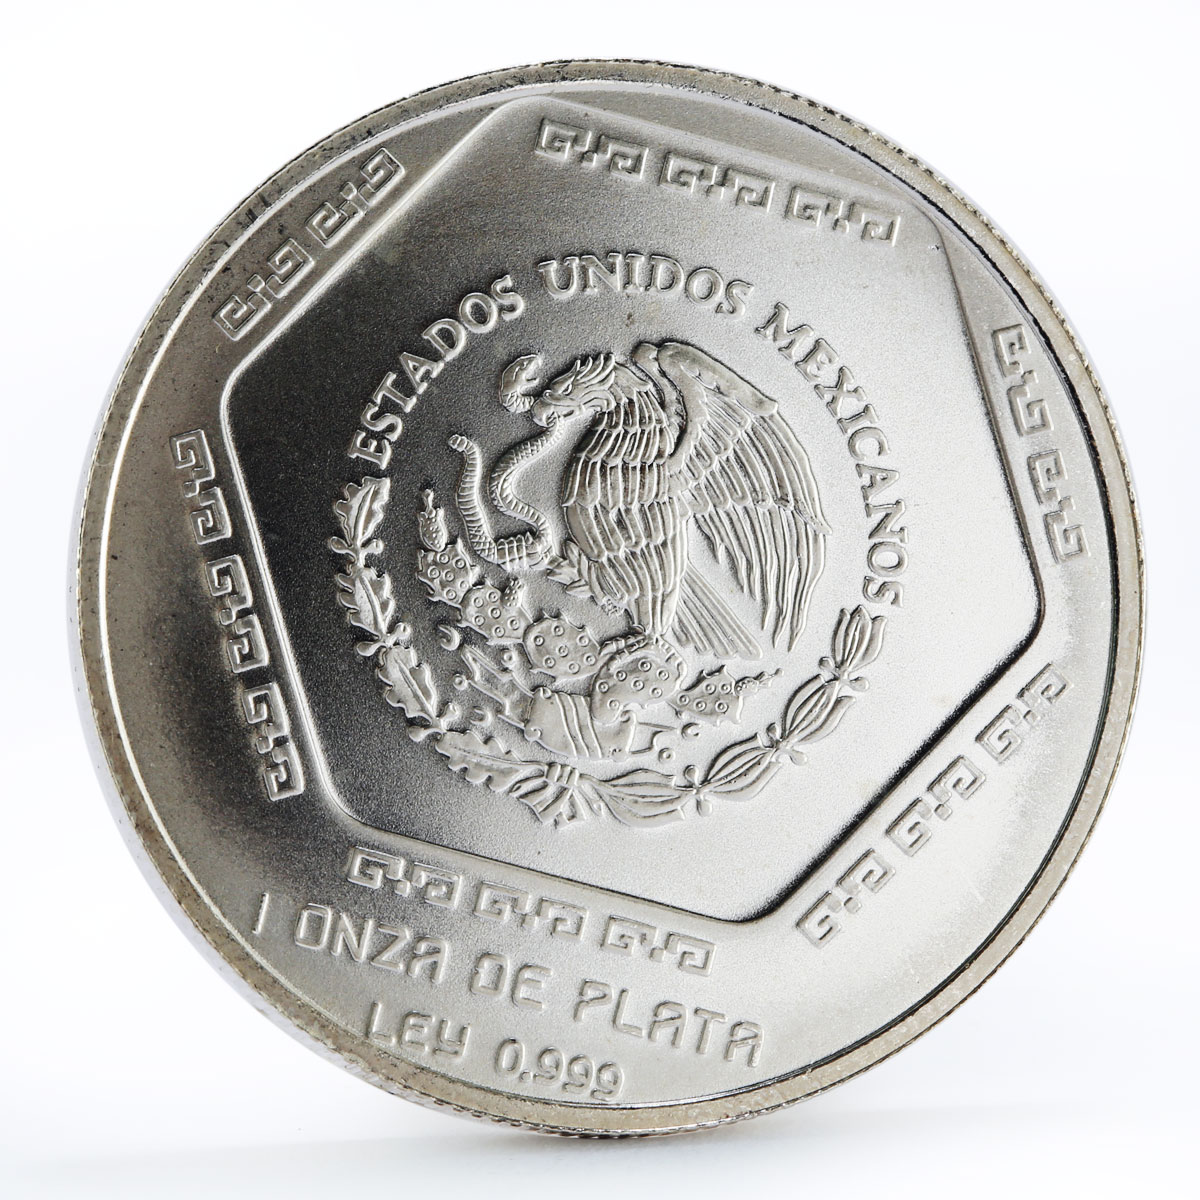 Mexico 5 pesos Precolombina series Lapida Tumba de Palenque silver coin 1994